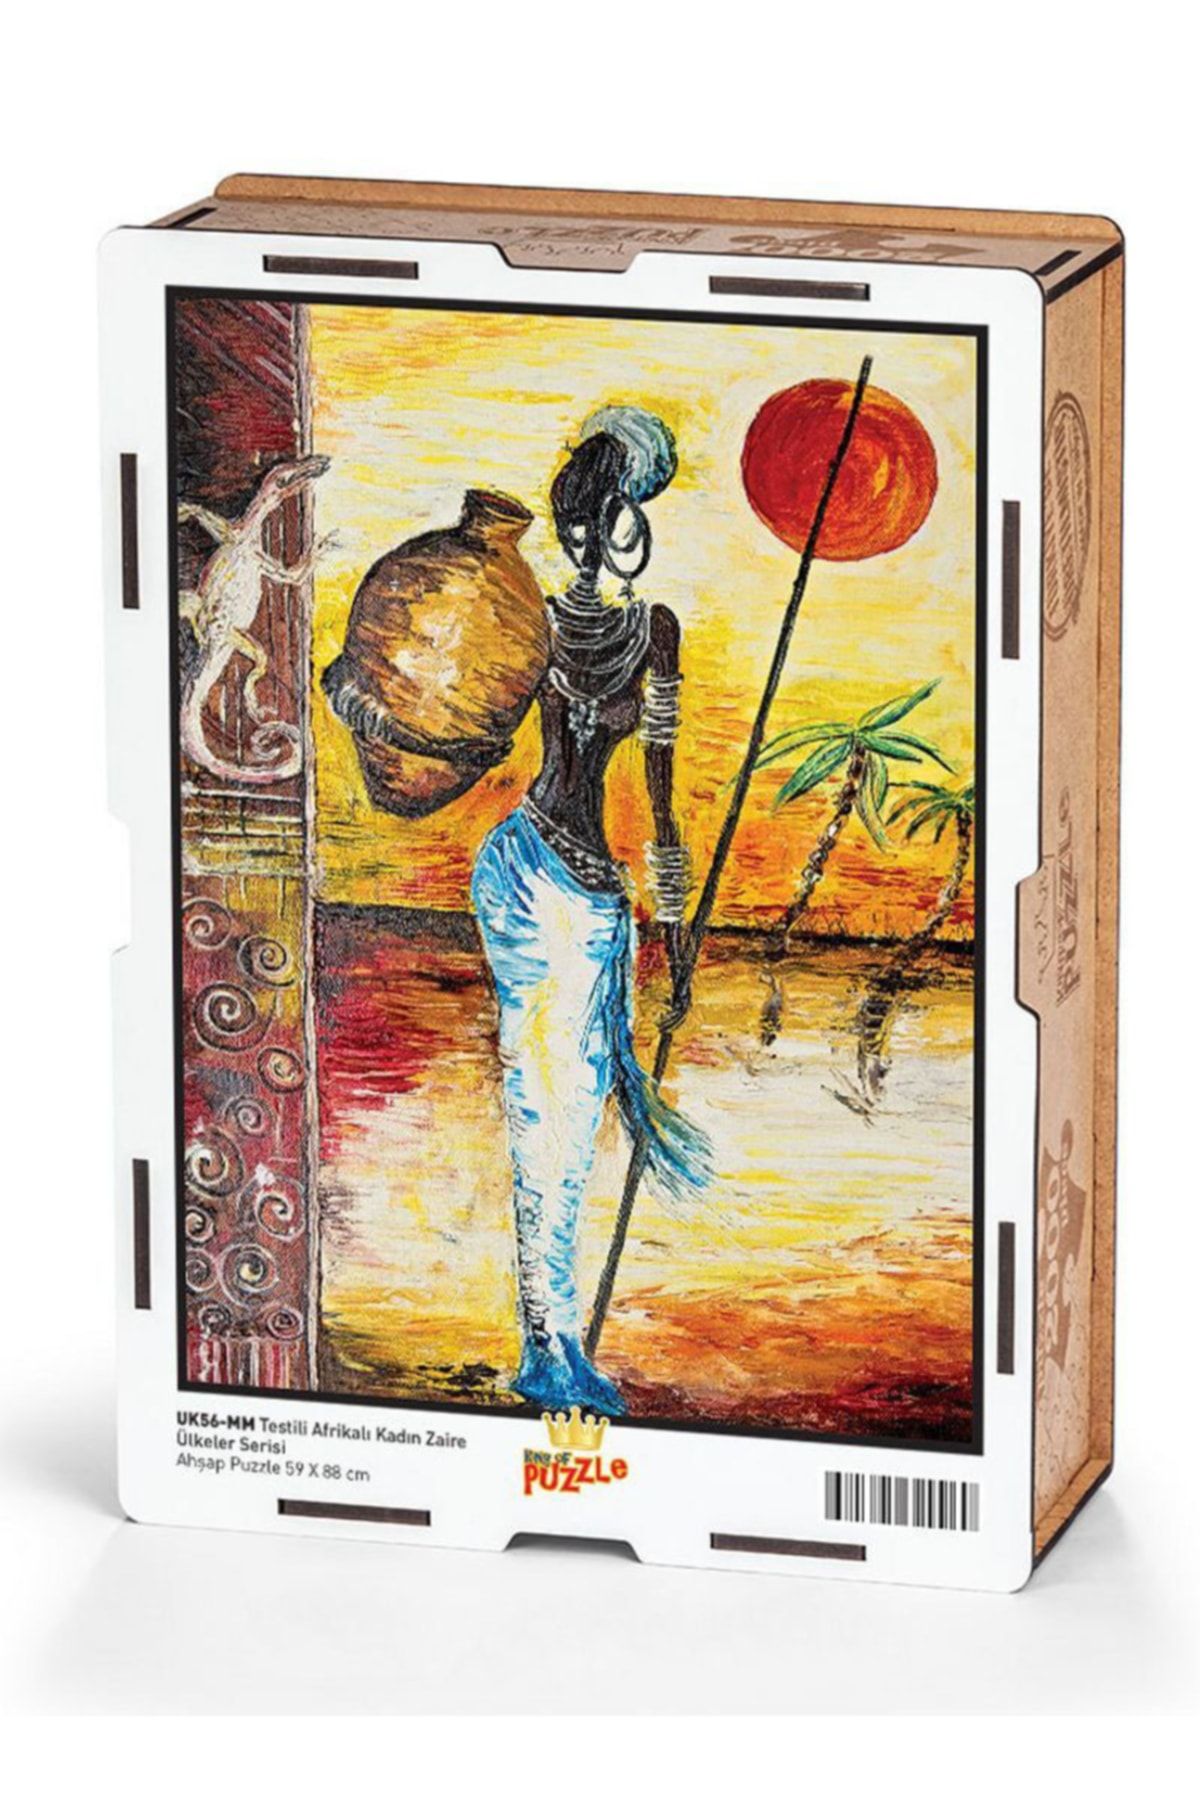 Genel Markalar Testili Afrikalı Kadın Zaire Ahşap Puzzle 2000 Parça (uk56-mm)